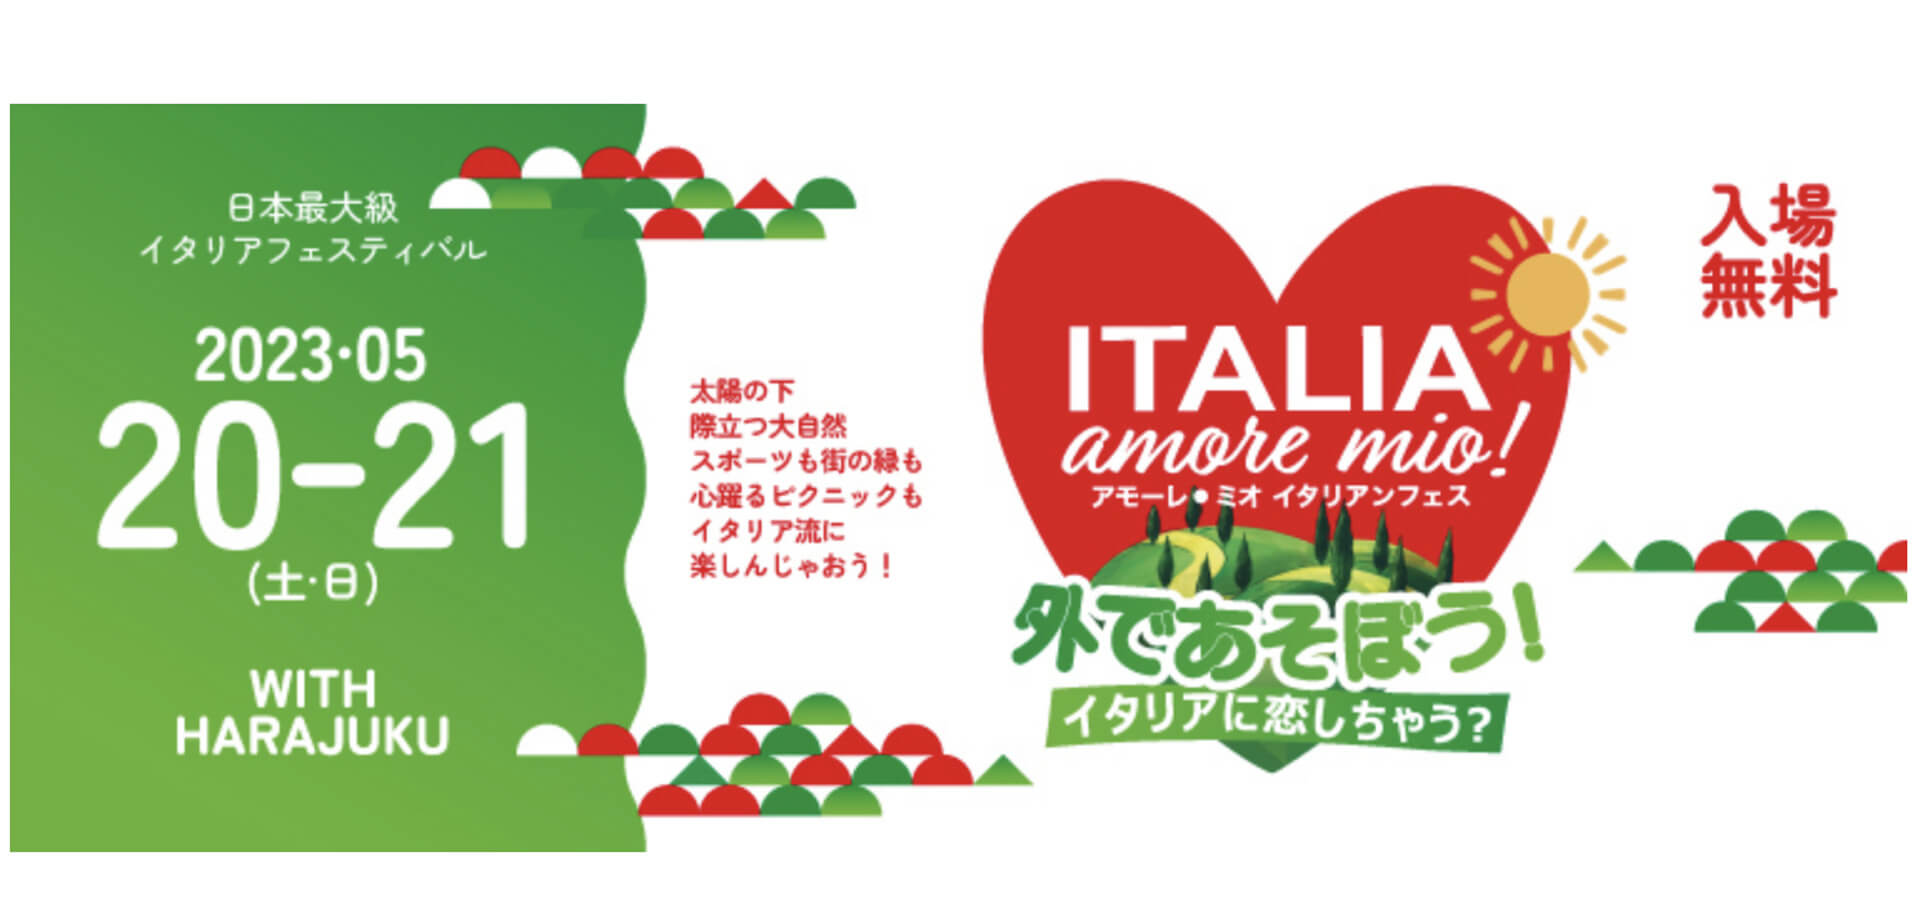 在日イタリア商工会議所 Italia, amore mio! 外であそぼう！